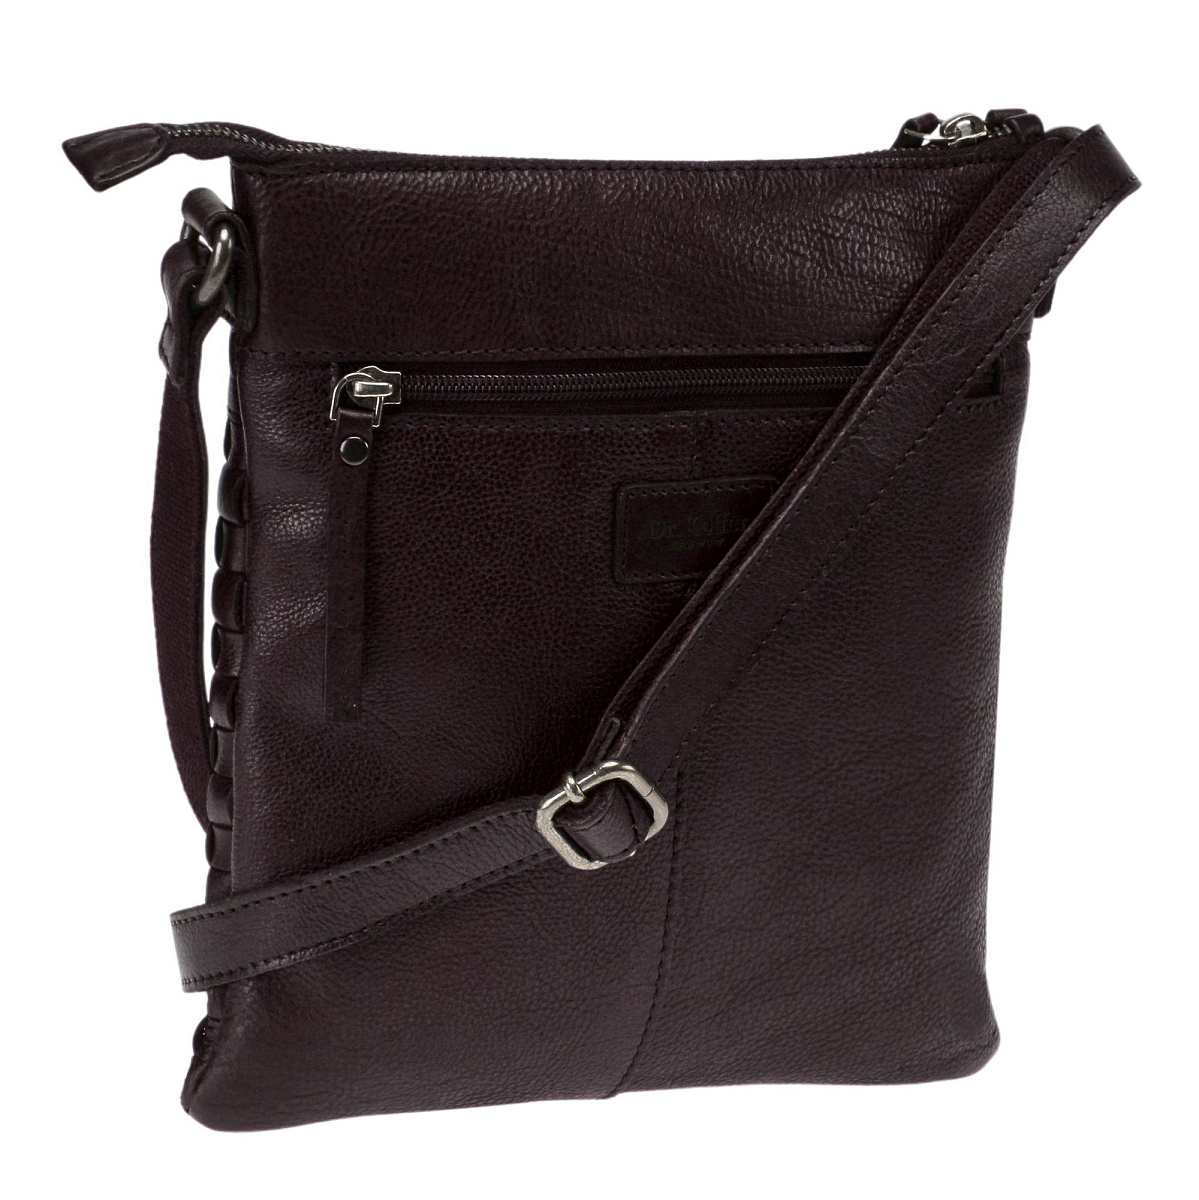 Ashley коричневая сумка через плечо W620104-249-09